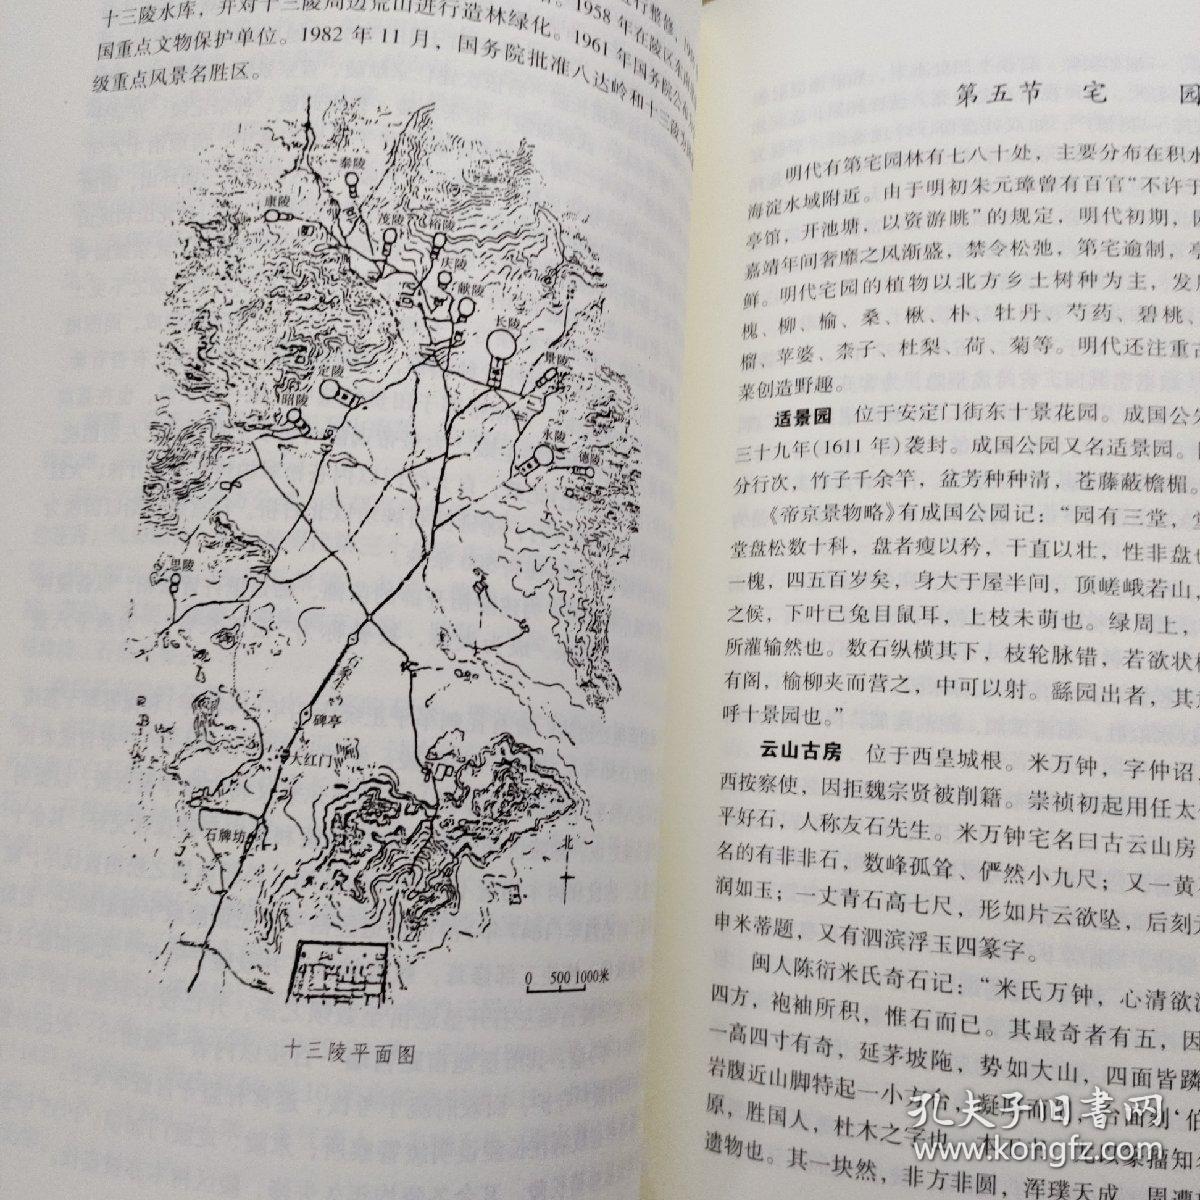 北京古典园林史
御园漫步-皇家园林的情趣
2册